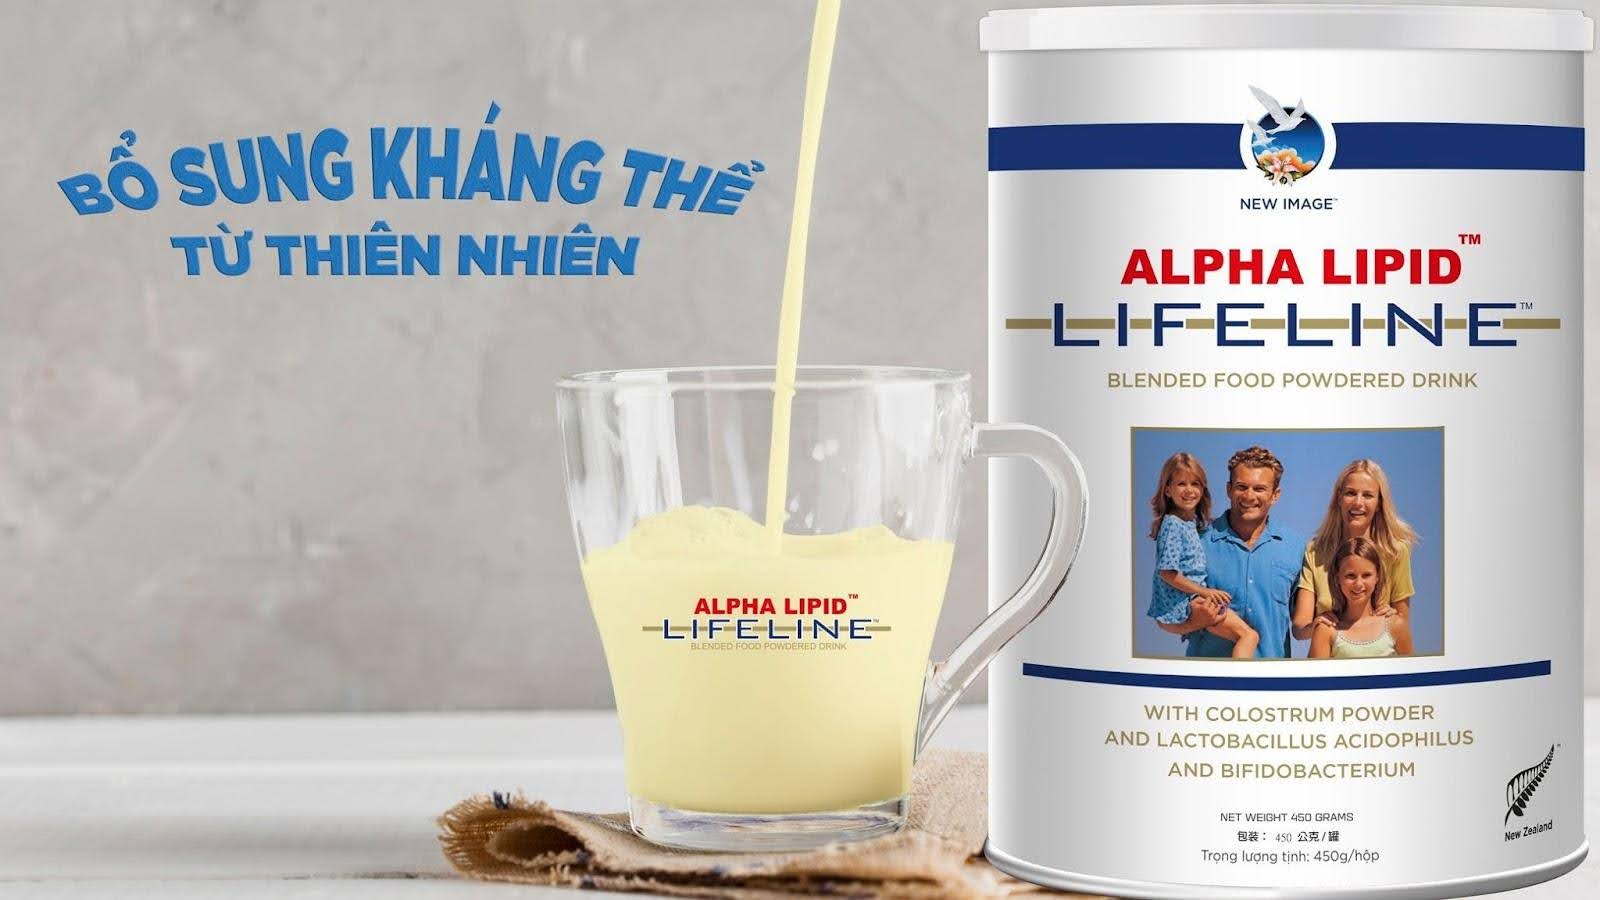 Sữa non Alpha Lipid mang tới nhiều lợi ích cho sức khỏe người dùng